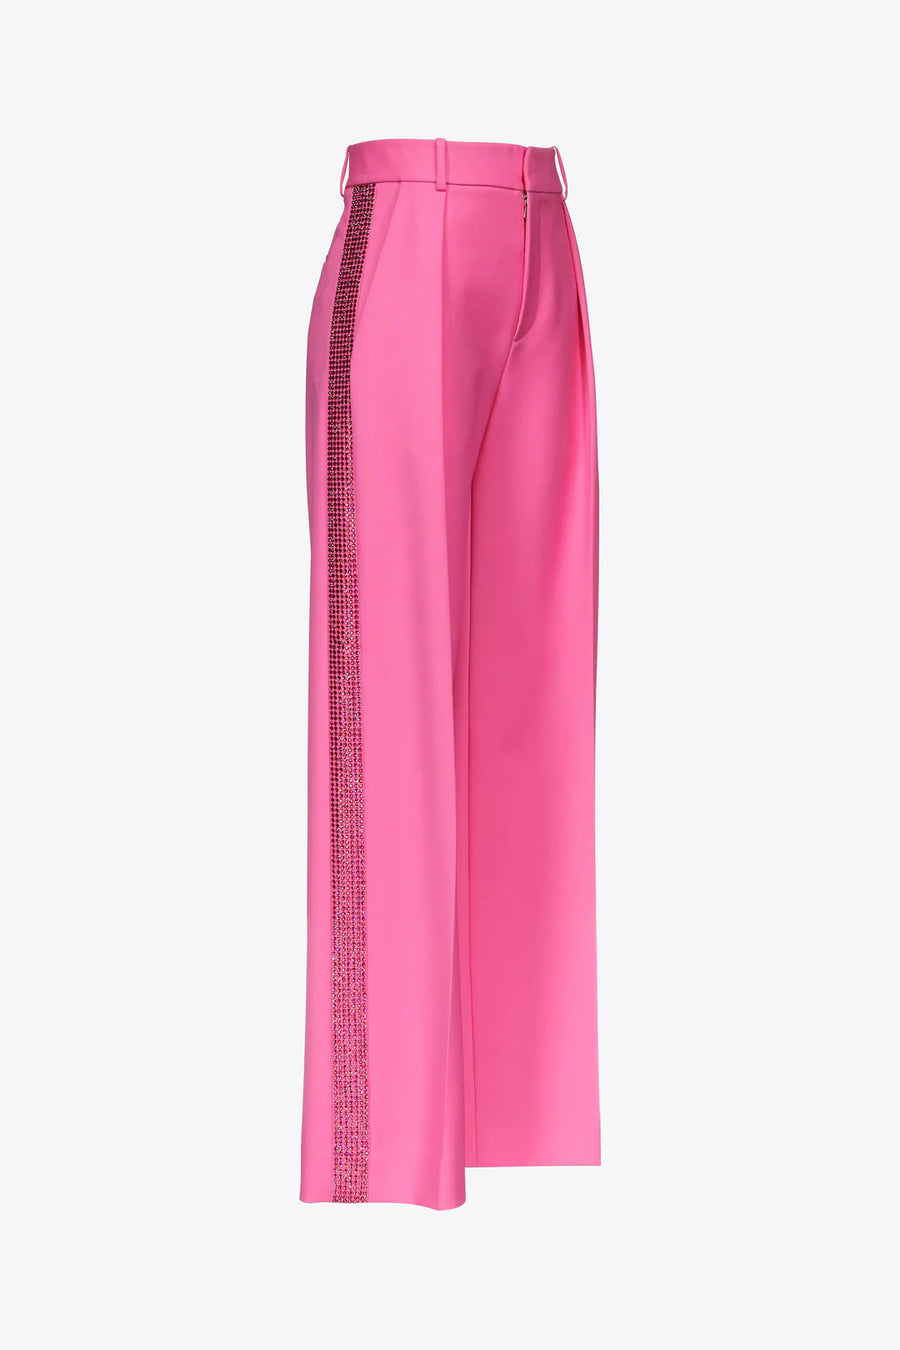 Crystal Embellished Trouser In Carmine Rose